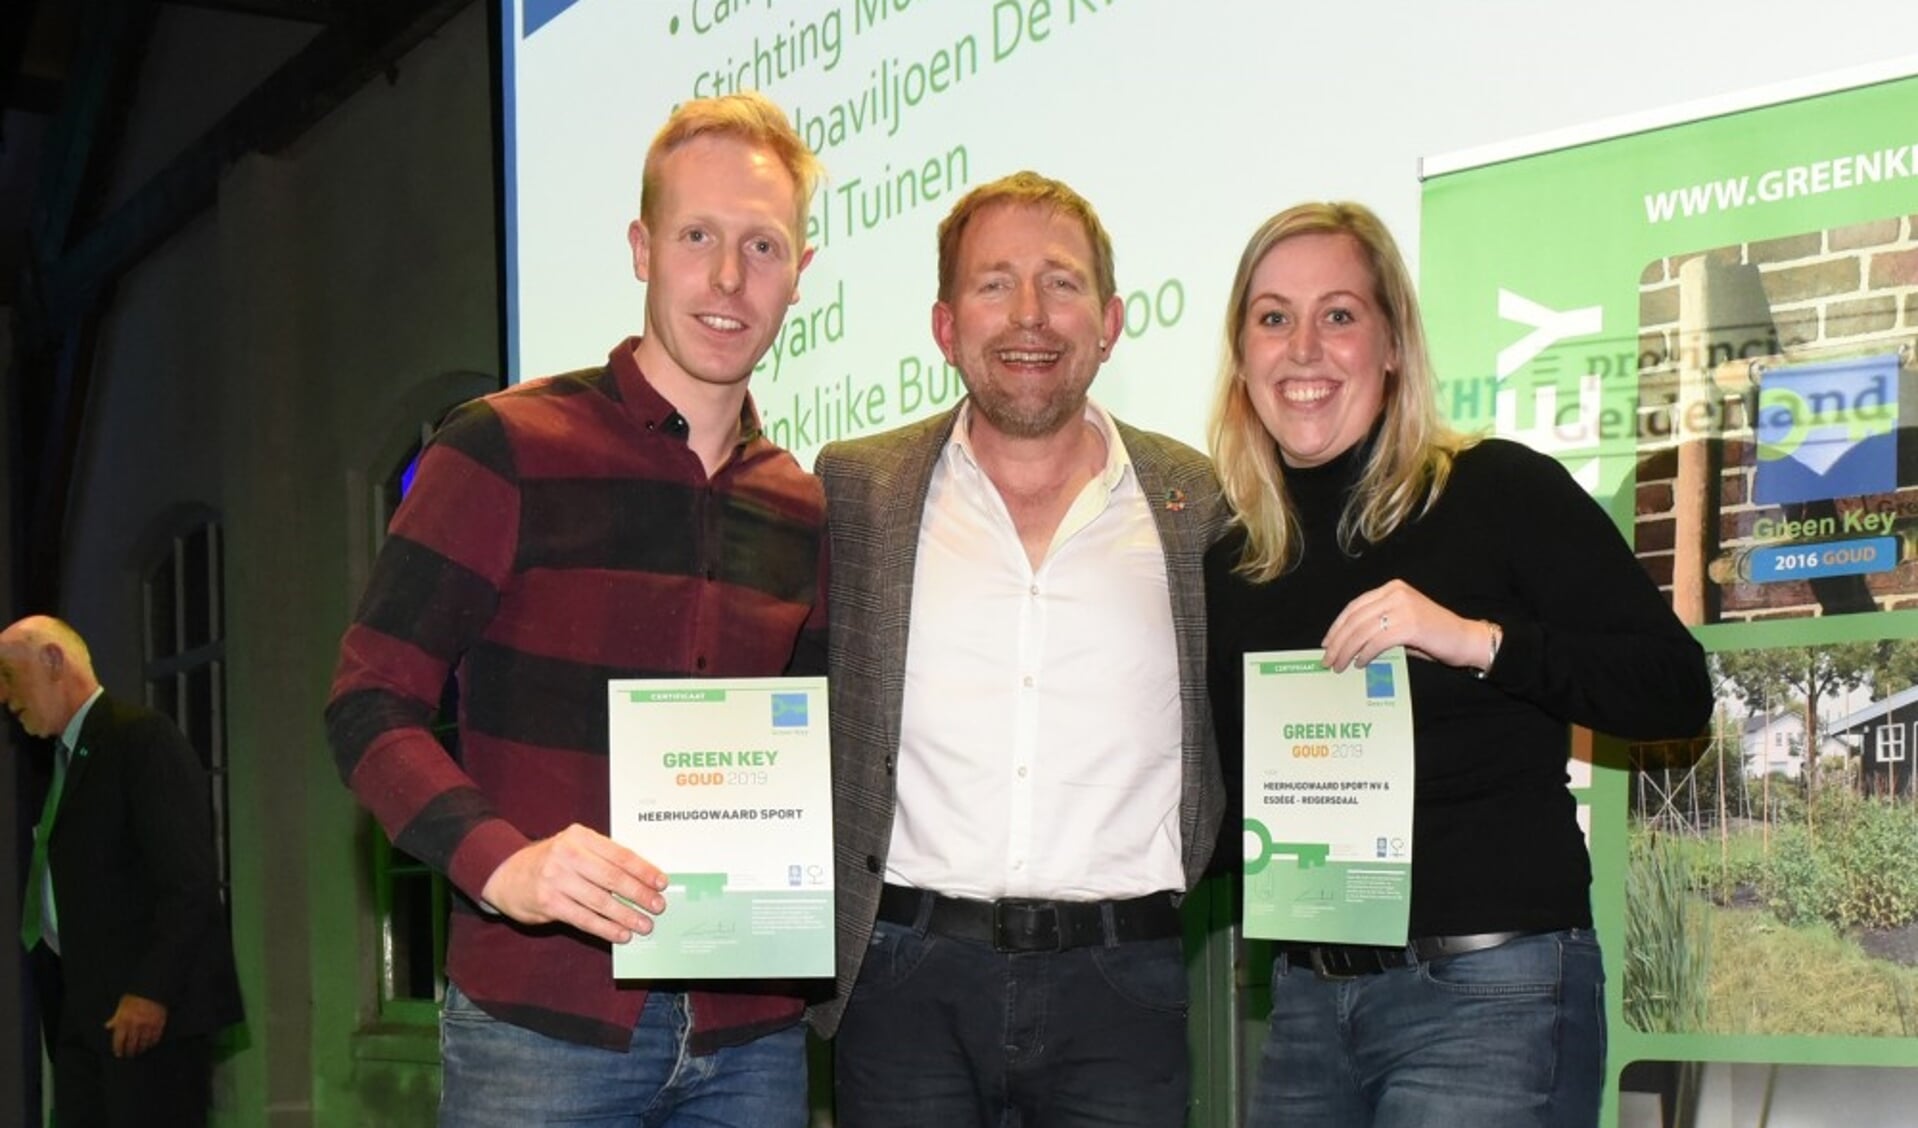 Danny de Boer en Jill Zuurbier van het Green Team Heerhugowaard Sport NV, met tv-presentator Harm Edens in hun midden.